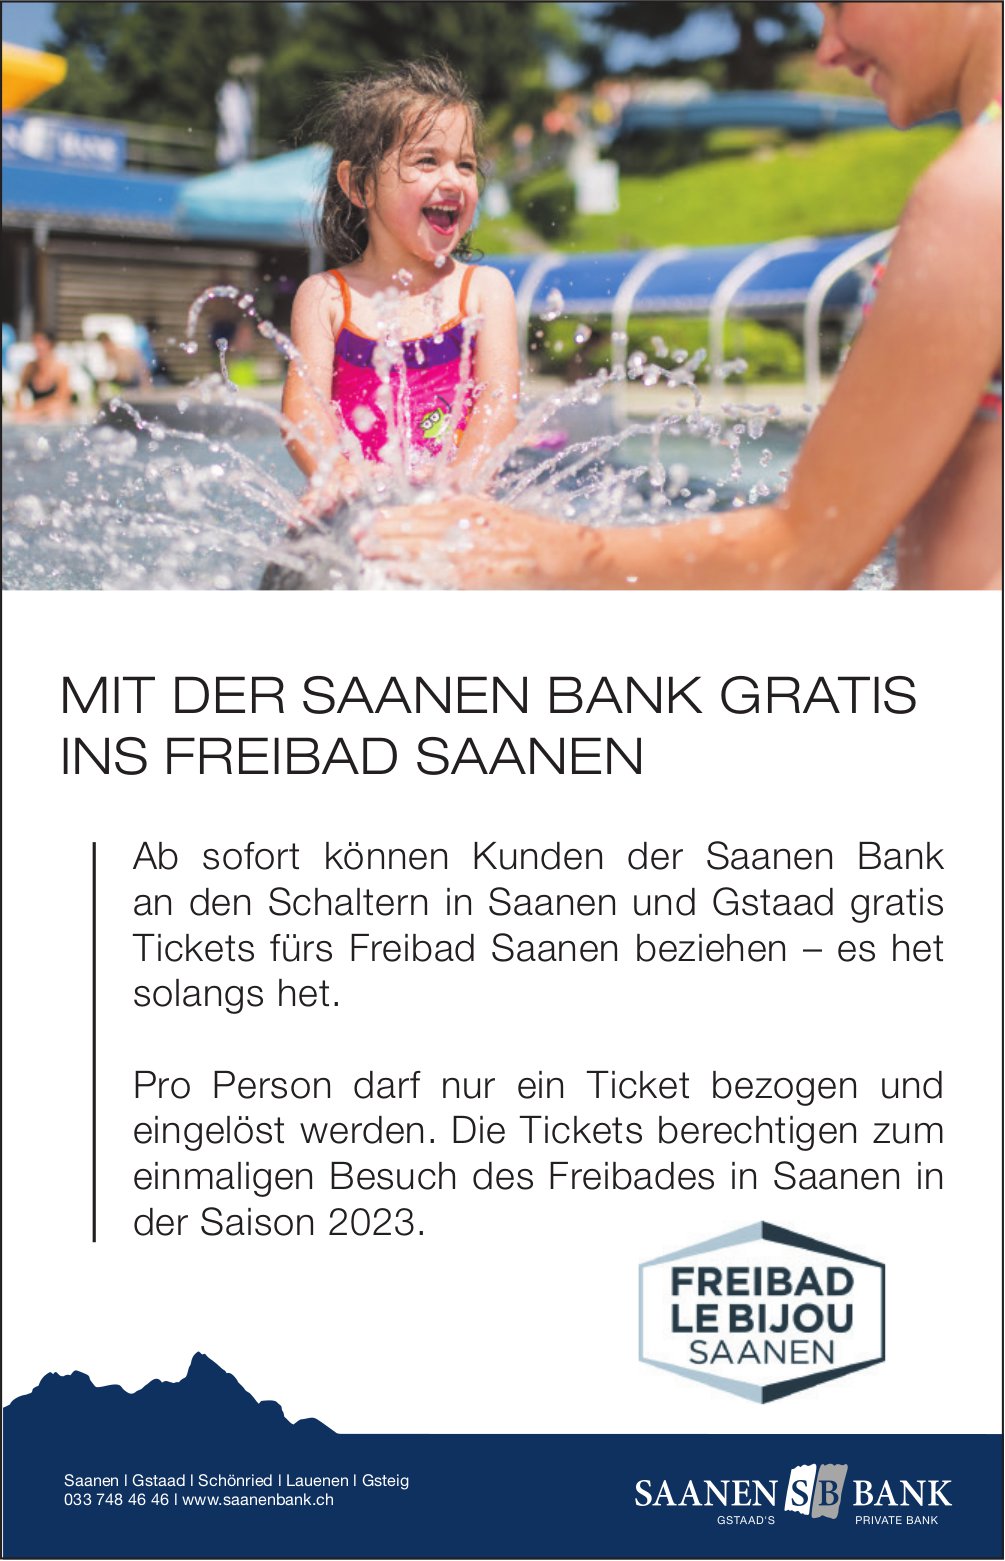 Saanen Bank, Gstaad - Mit der Saanen Bank gratis ins Freibad Saanen